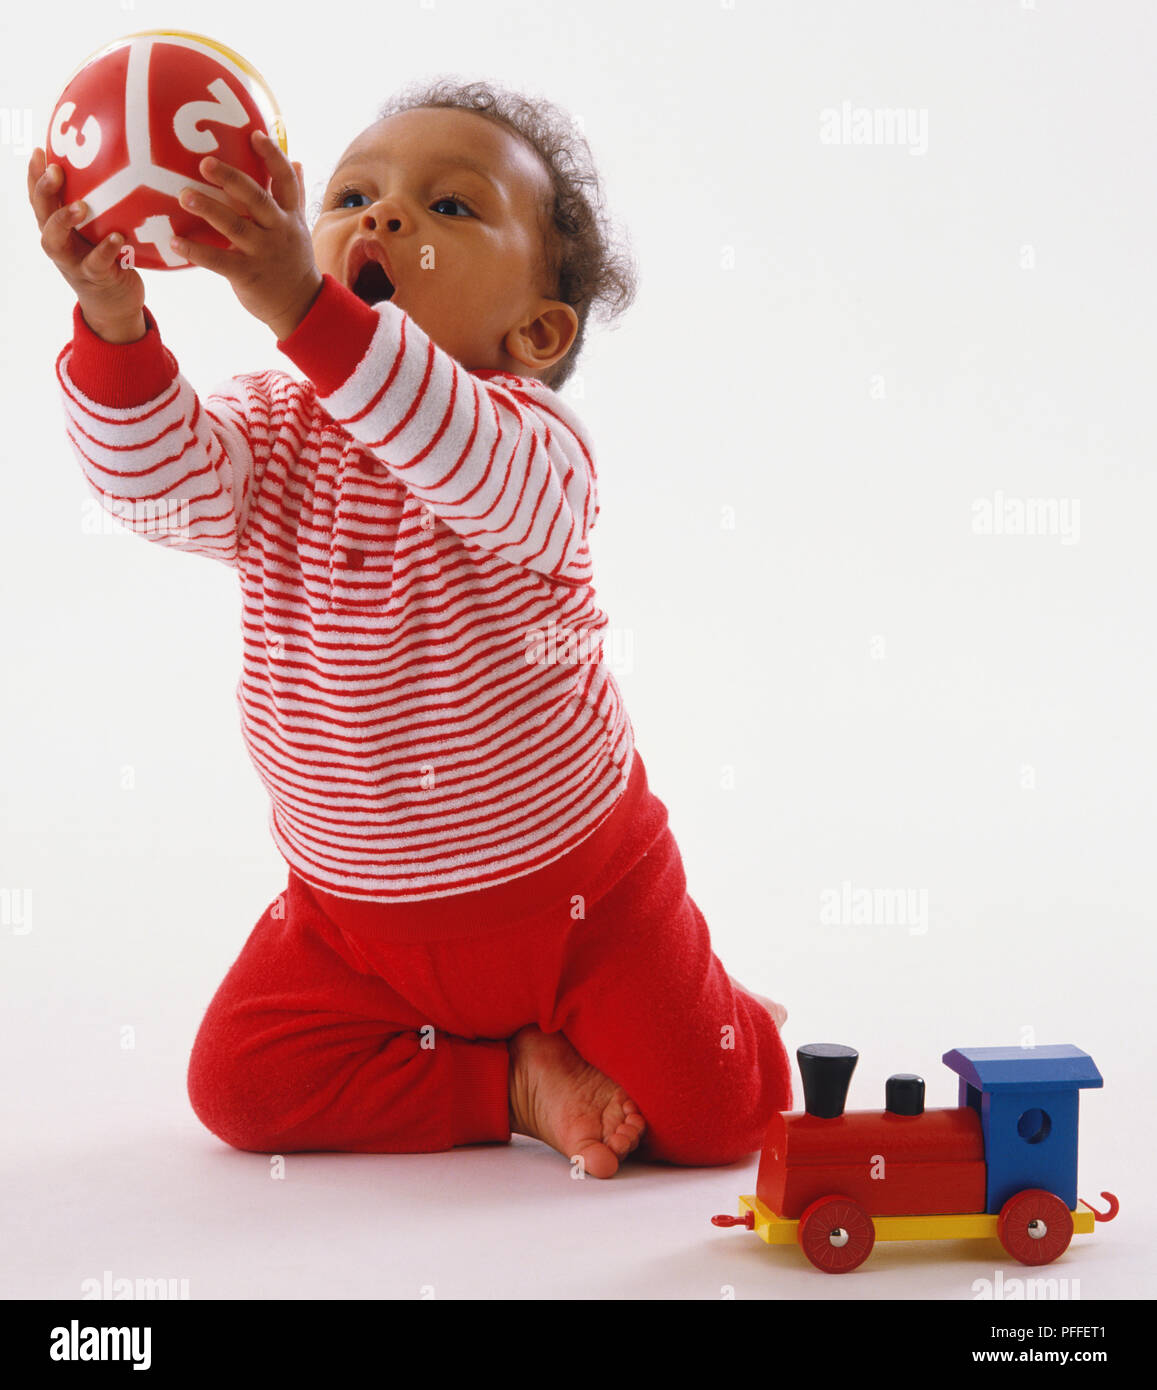 Il Toddler indossando a strisce rosse e bianche vesti, inginocchiata, sporgersi in avanti, afferrando la sfera colorata, toy train sul pavimento accanto a lei. Foto Stock